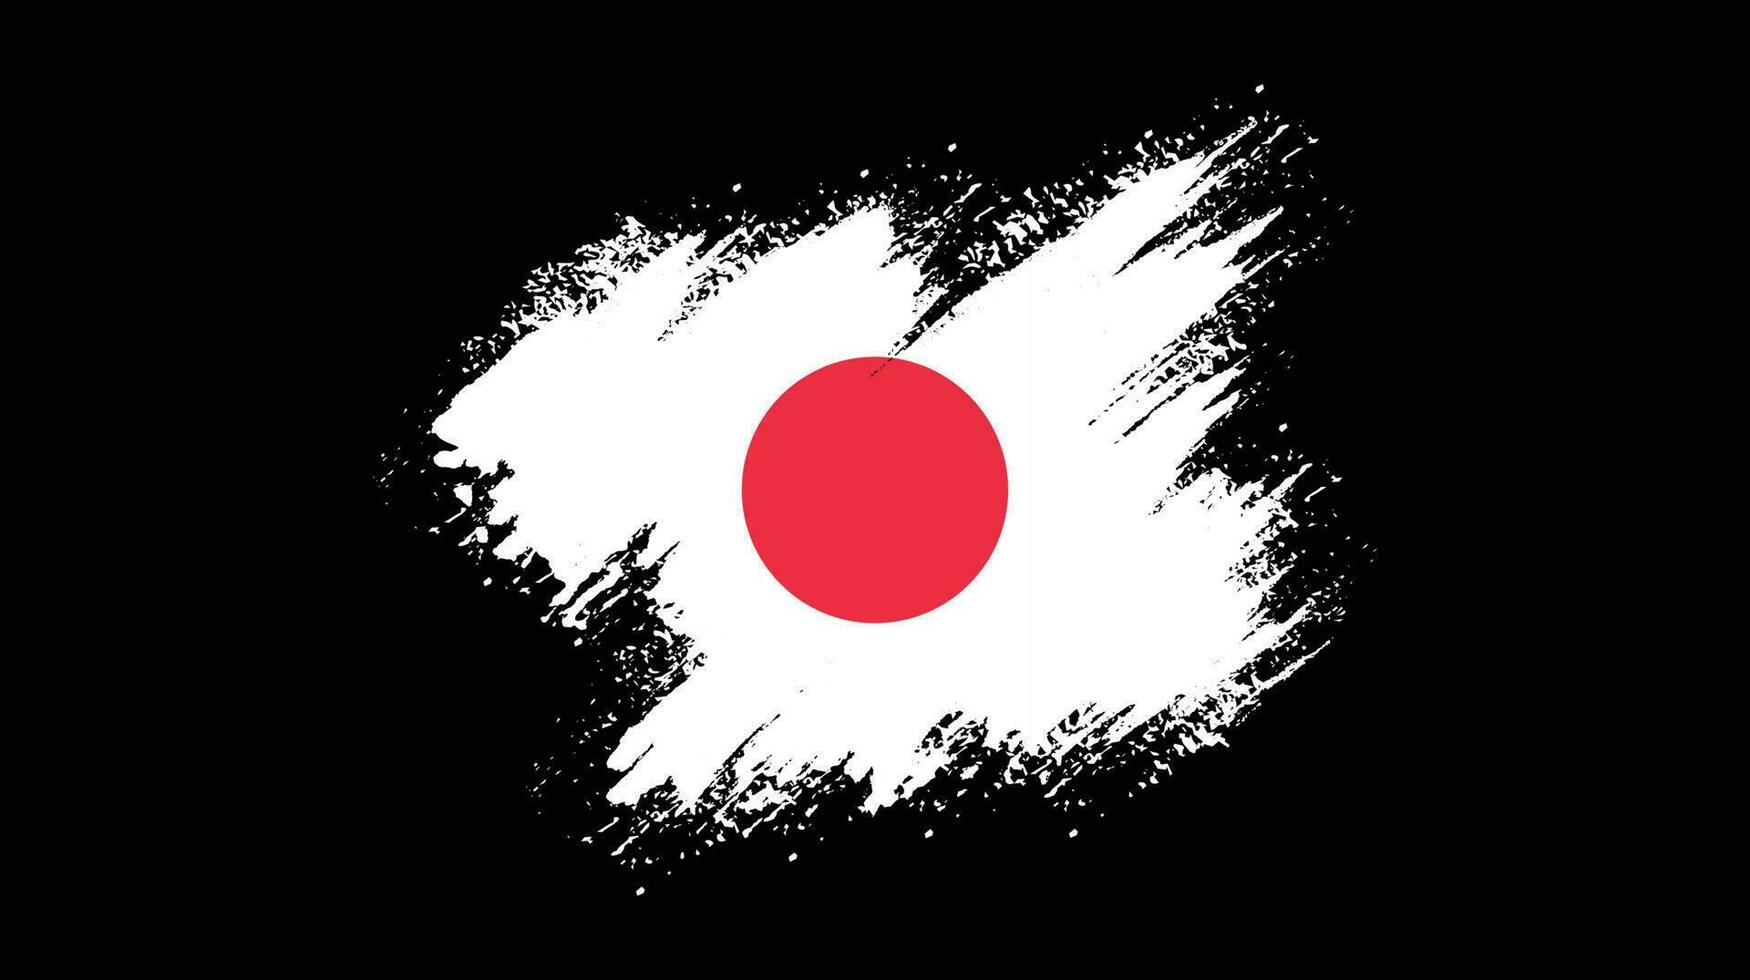 Splatter brush stroke Japan flag vector